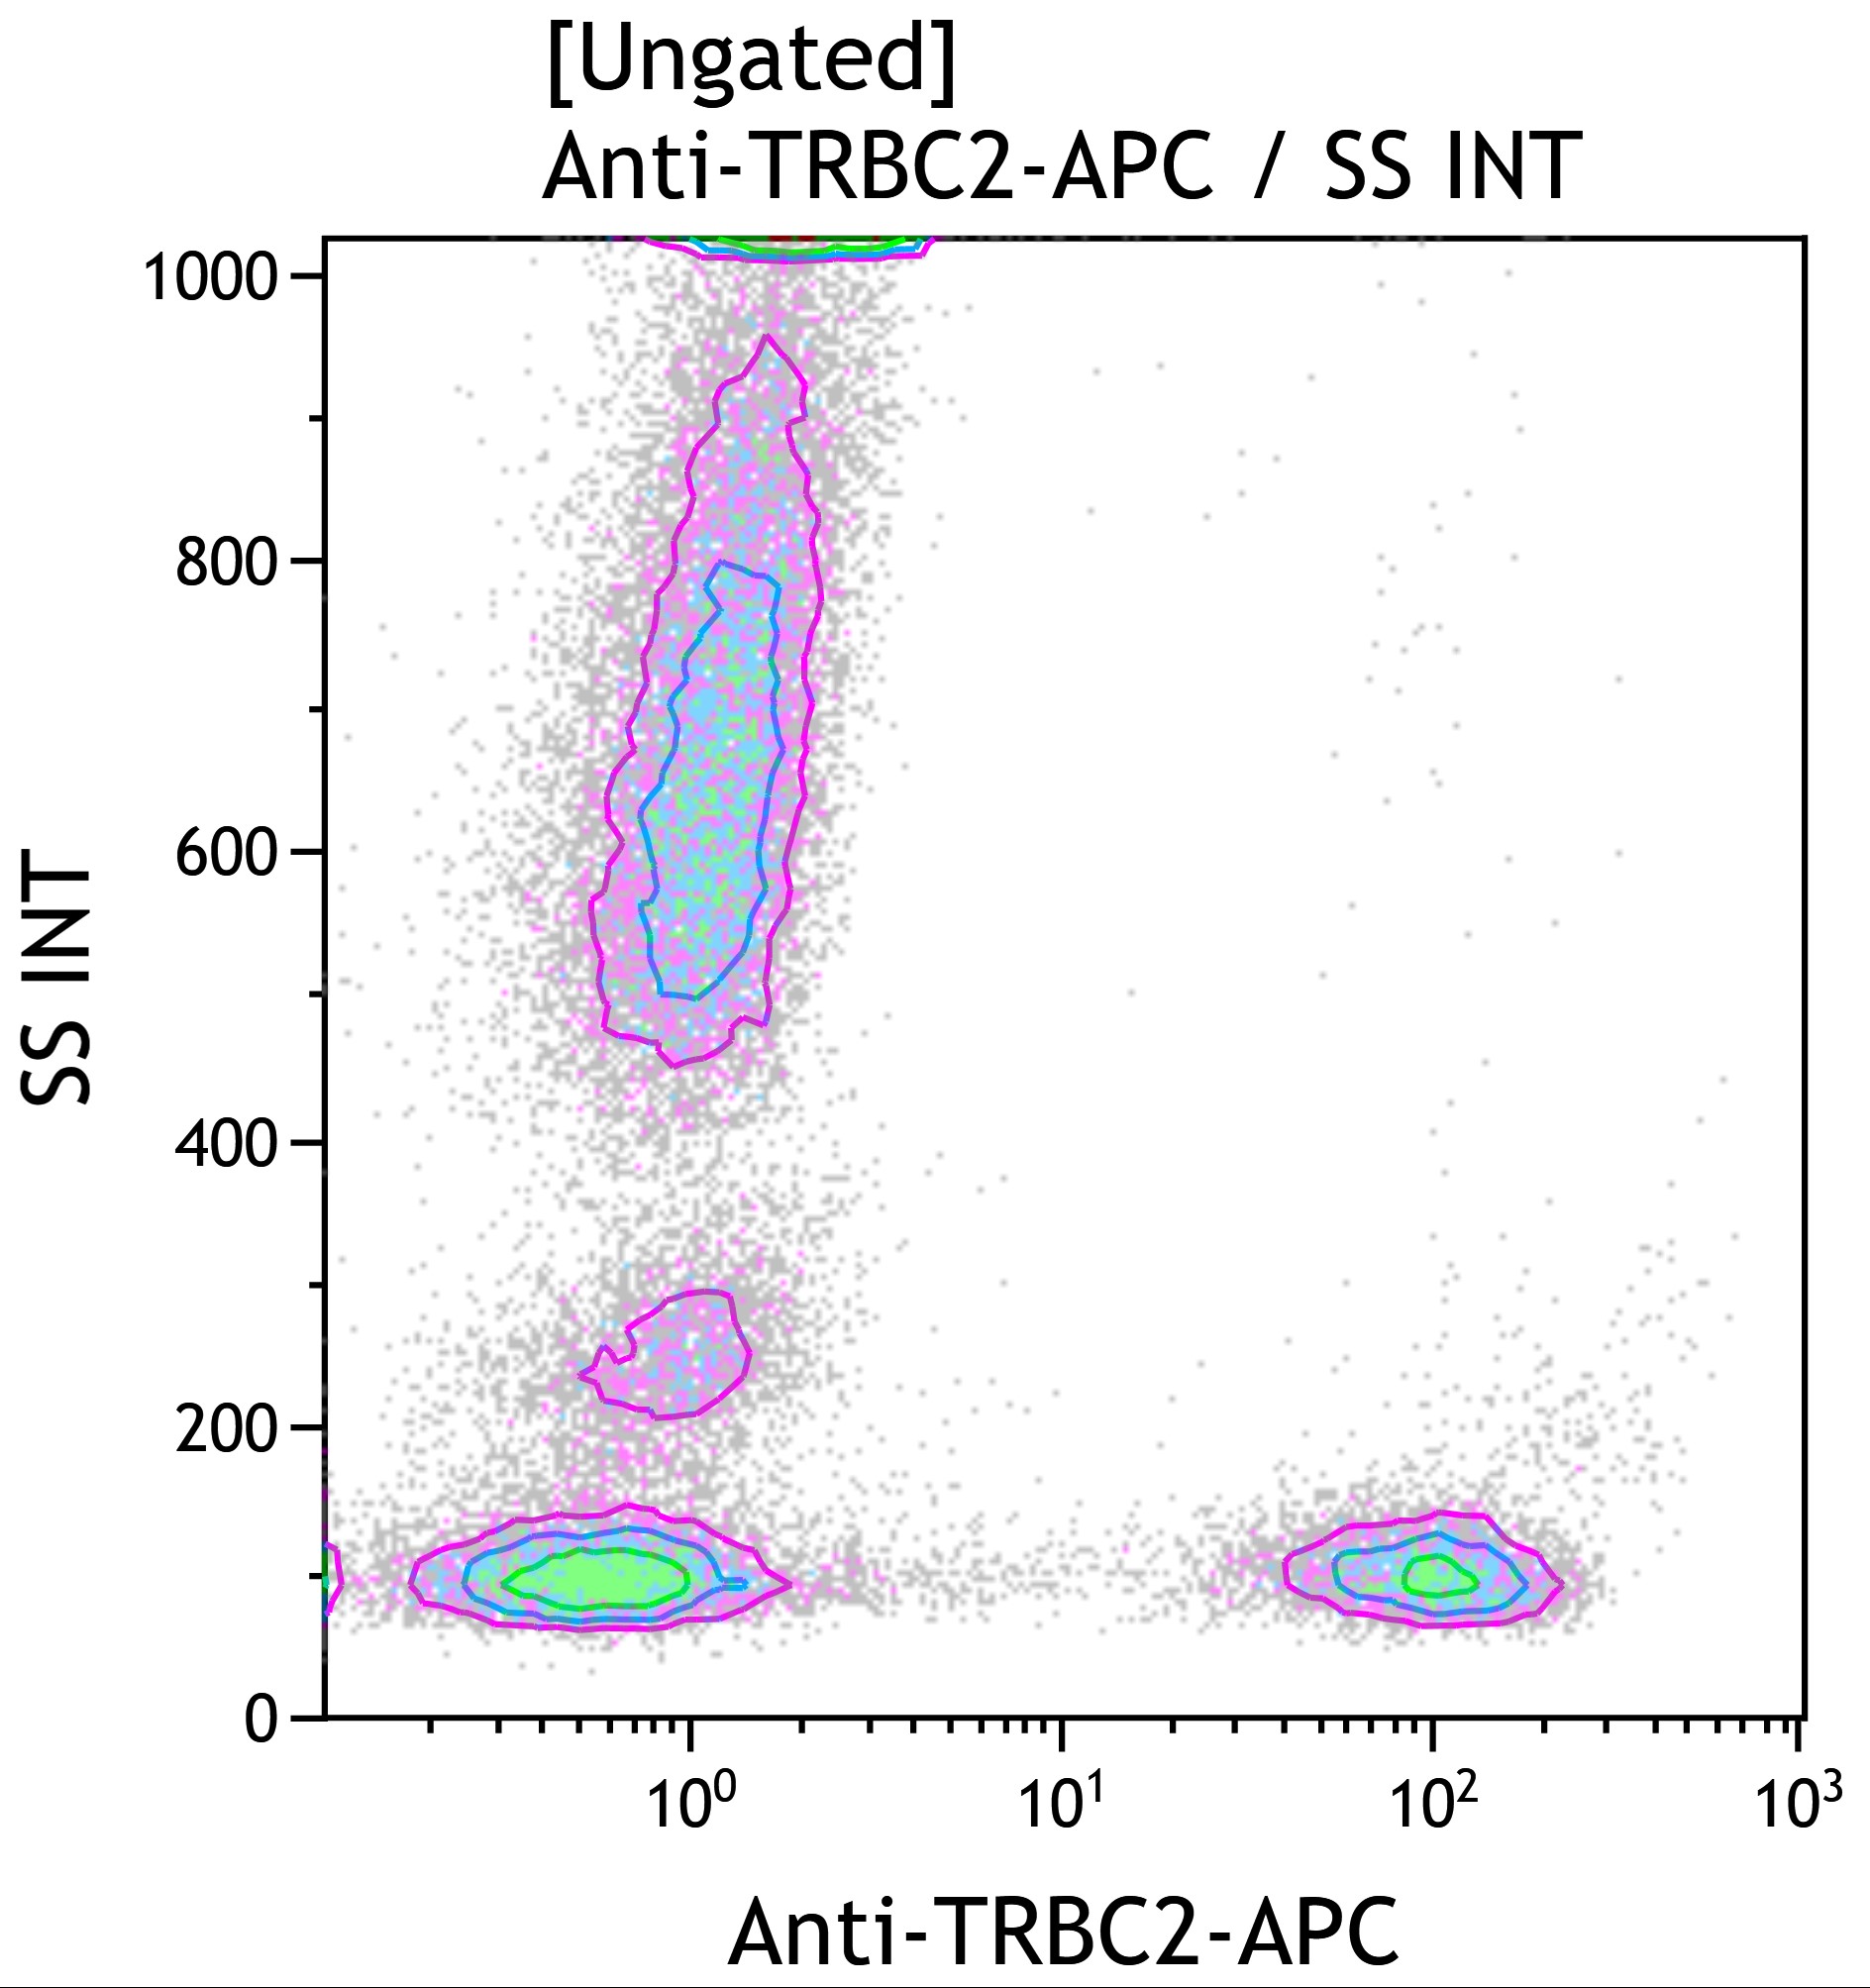 Contour plot of Anti-TRBC2-APC vs side scatter ungated